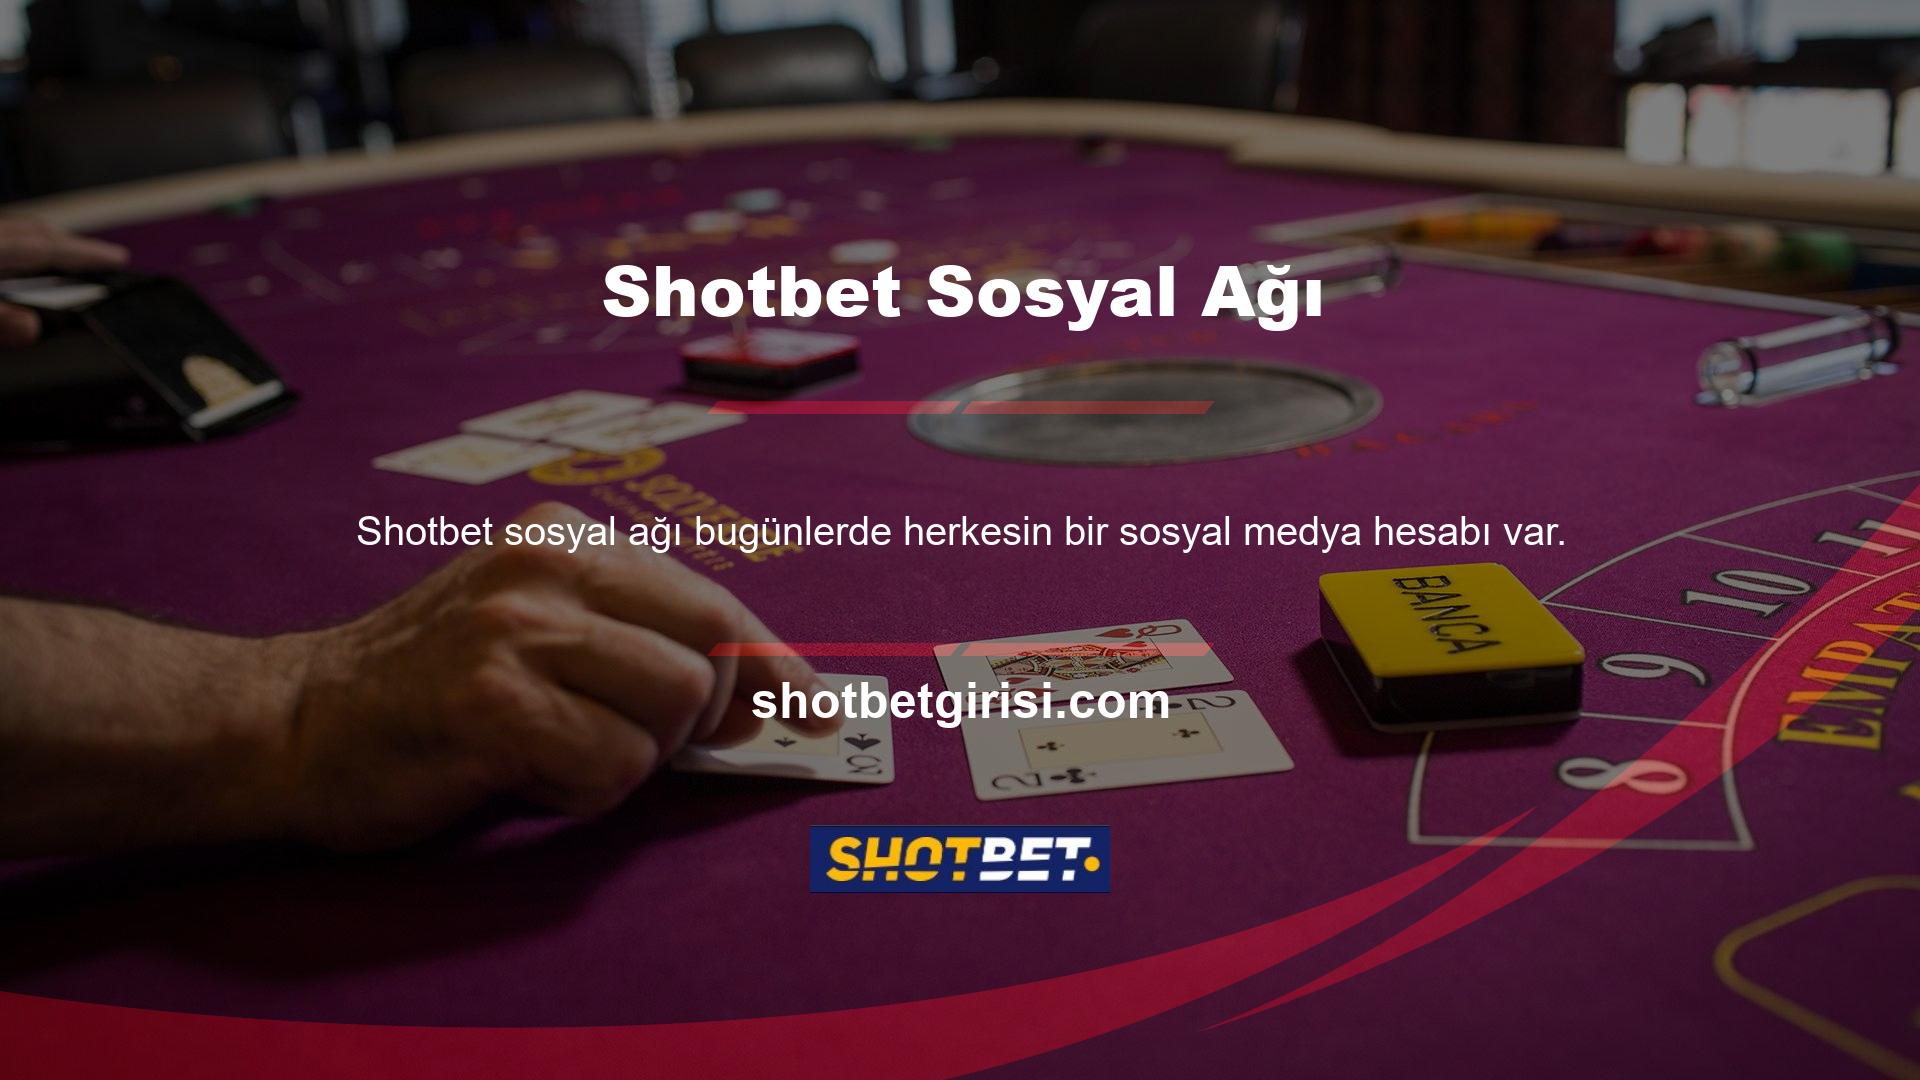 Shotbet bahis siteleri de en yeni sosyal medya platformlarını kullanır